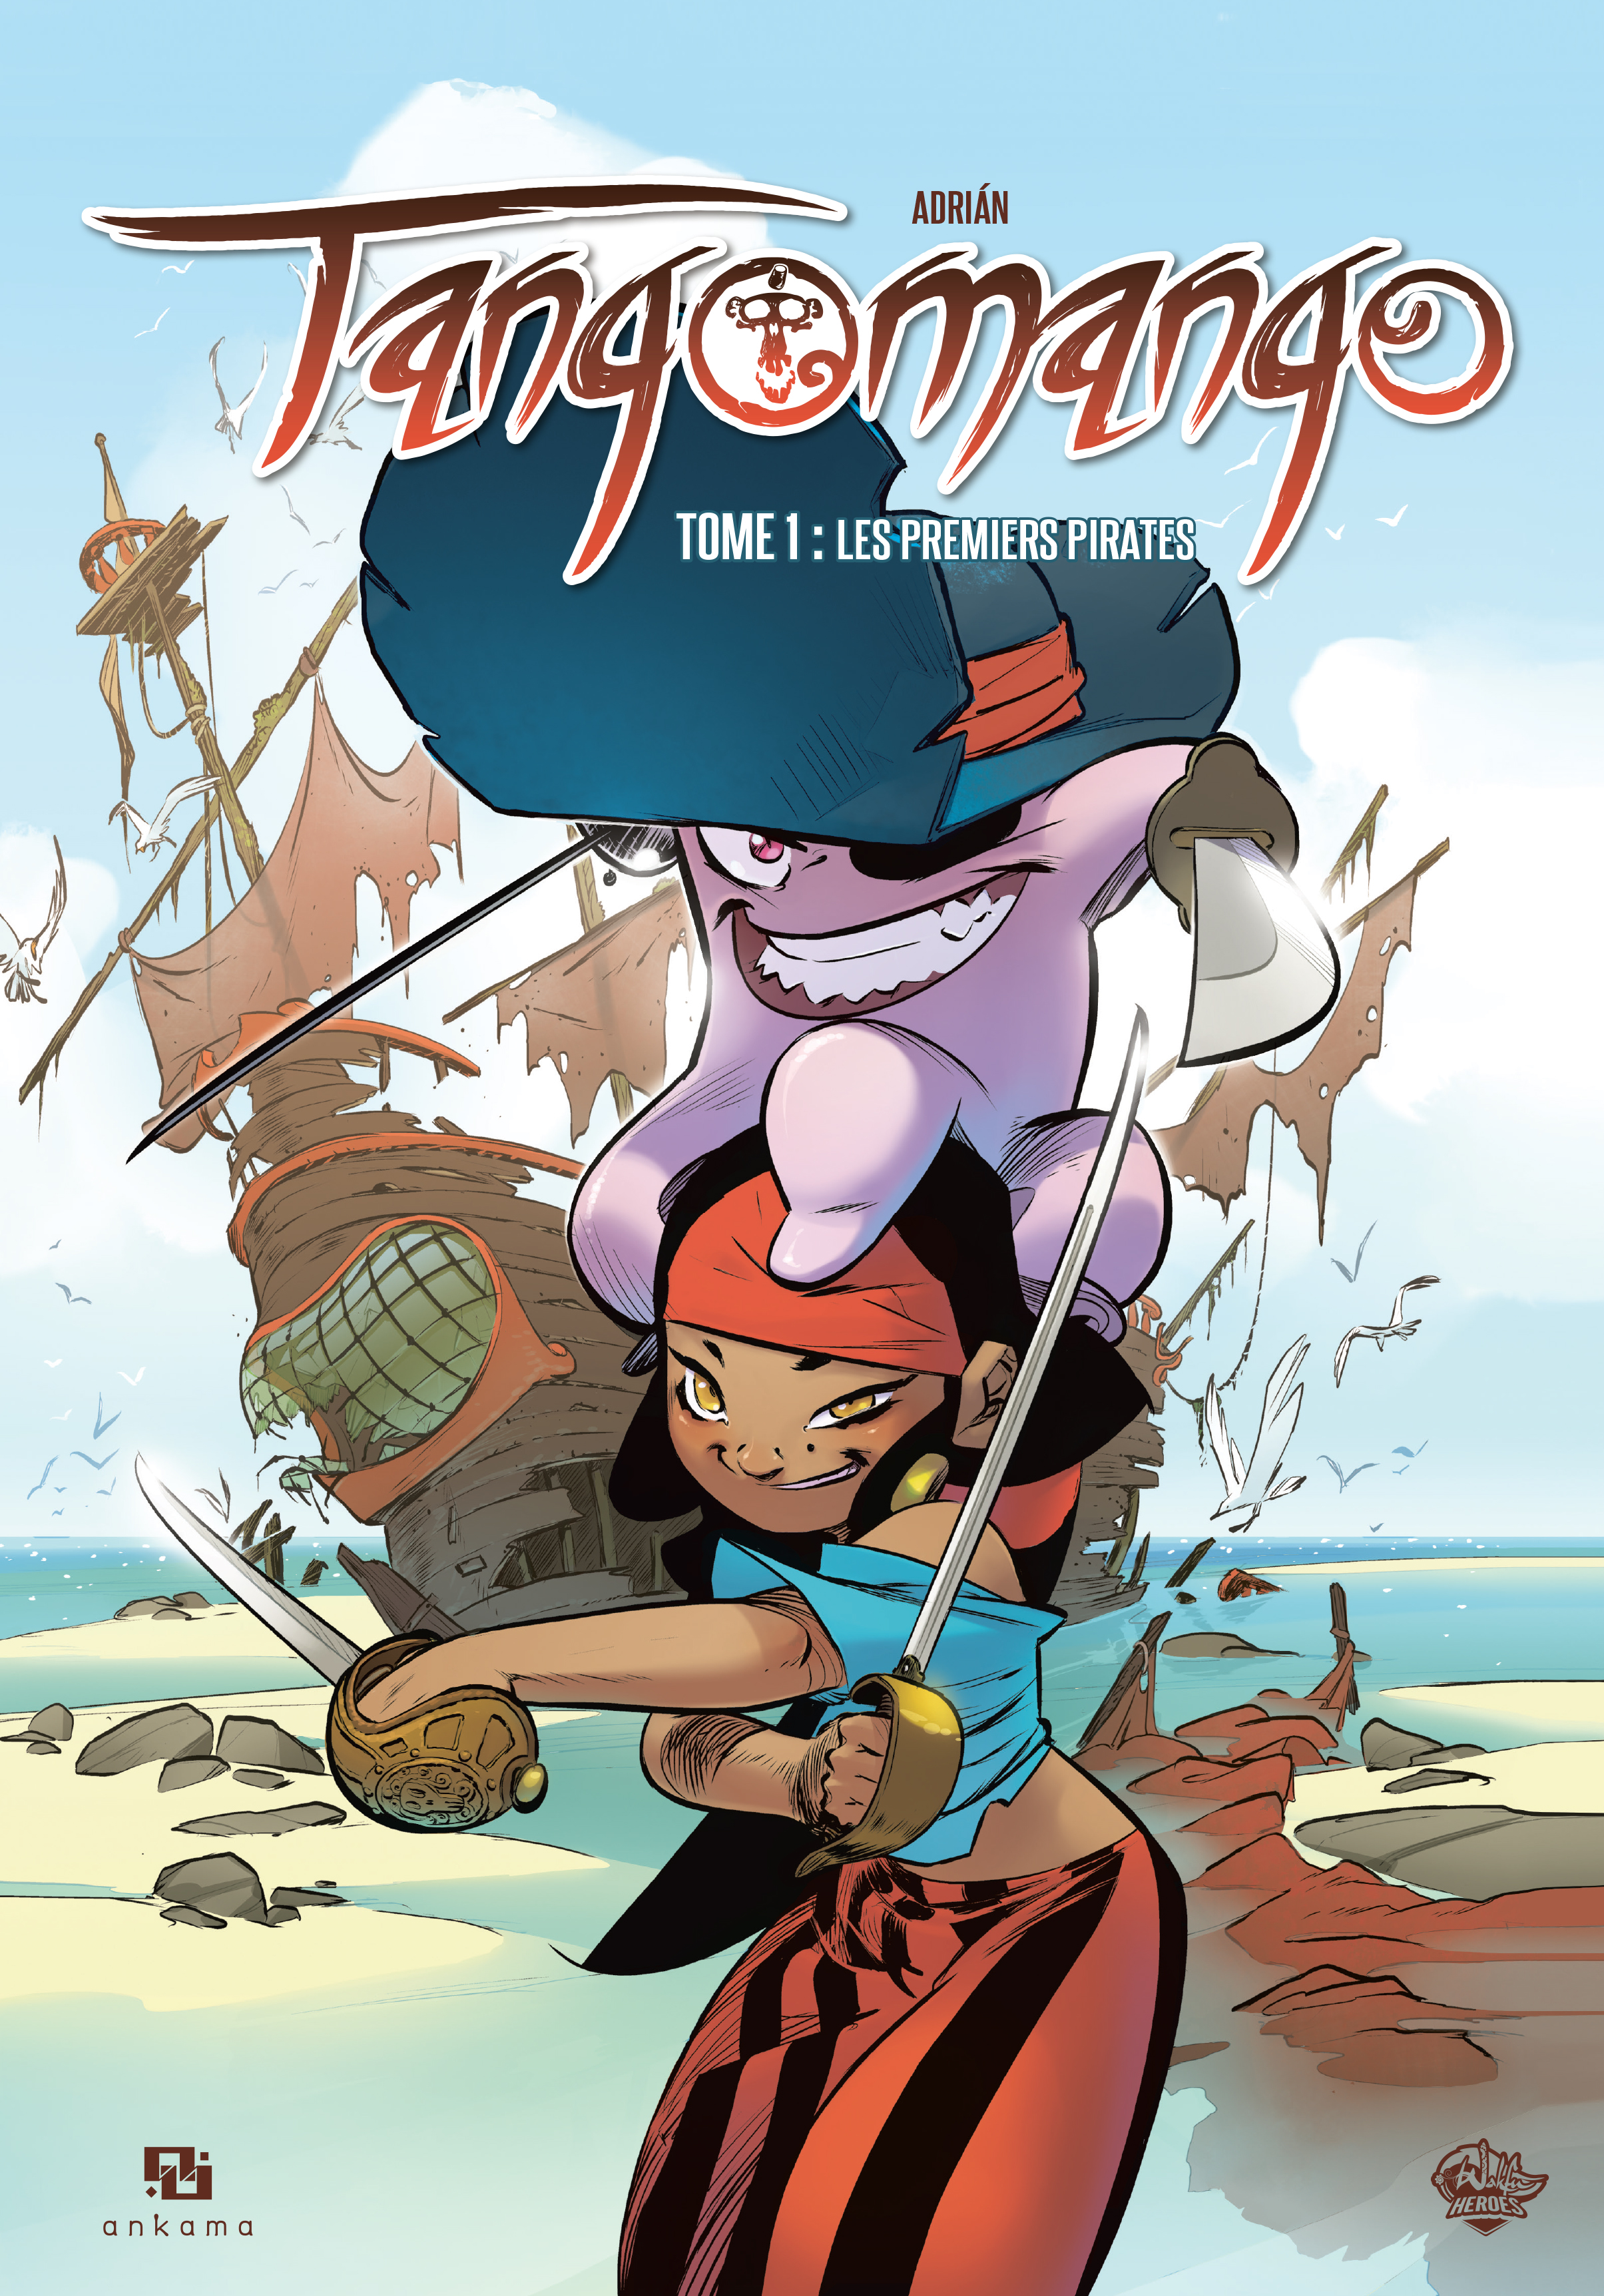  Tangomango T1 : Les nouveaux pirates (0), bd chez Ankama de Adrian